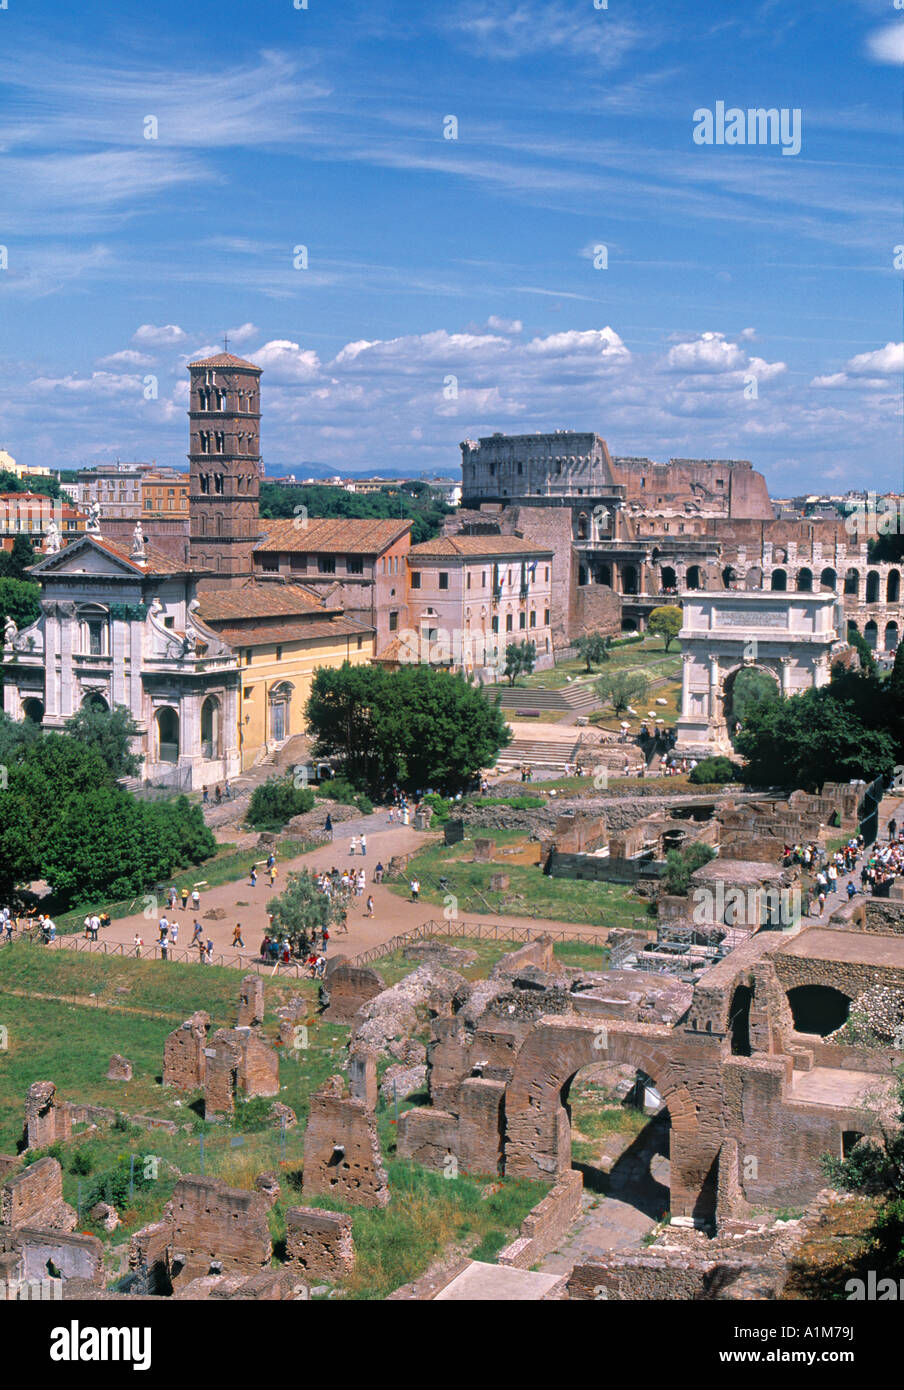 Forum romain, Rome, Latium, Italie Banque D'Images